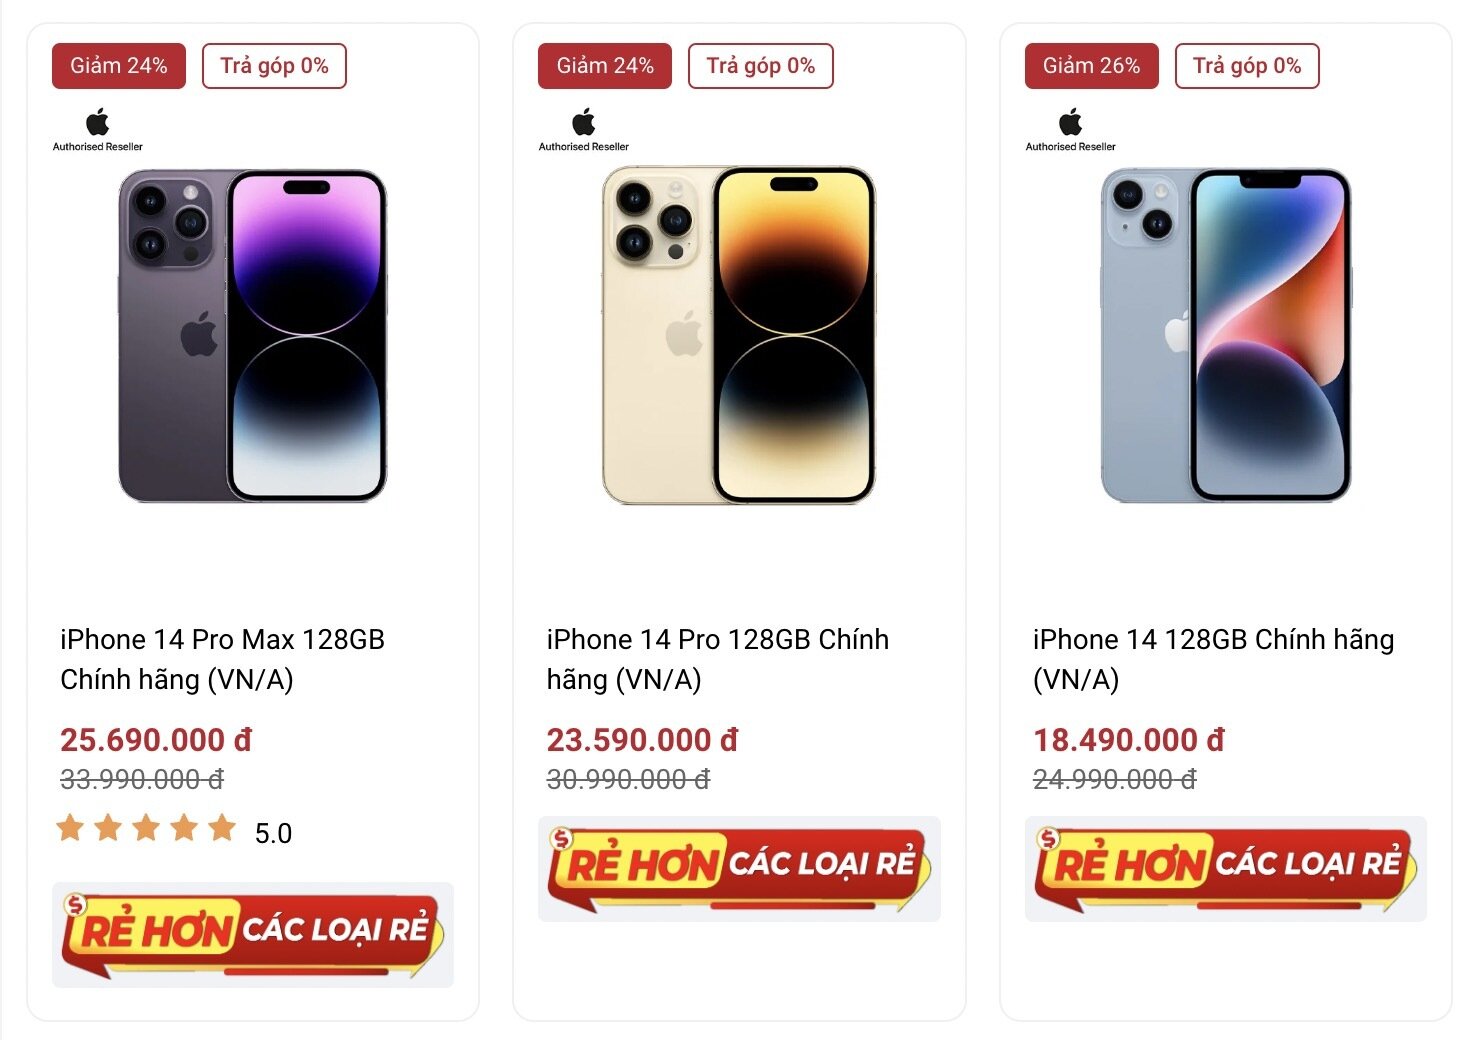 Giá thành bộ đôi iPhone 14 Pro và 14 Pro Max tại Di động Việt trước giờ iPhone 15 ra mắt. (Ảnh chụp màn hình)